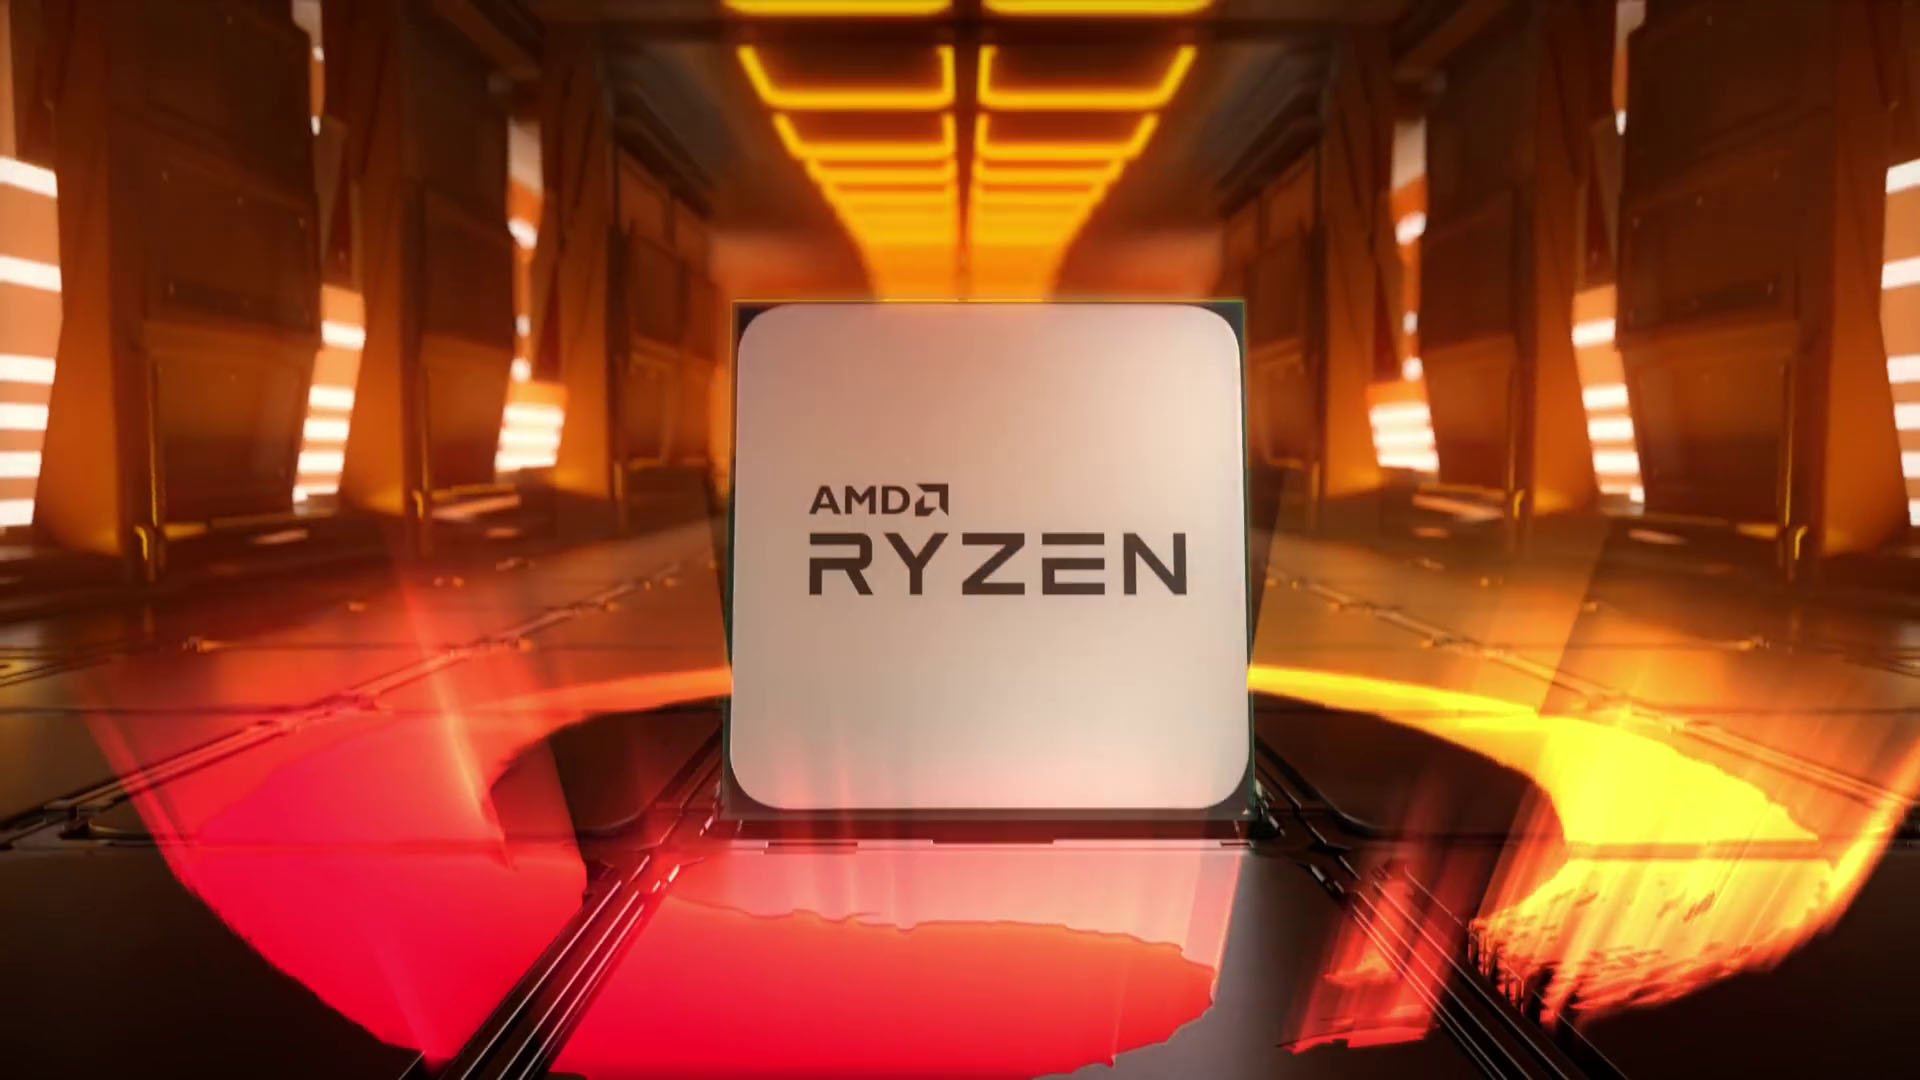 AMD Ryzen 4000 – Zen 3 CPU release date, specs, pricing, and performance